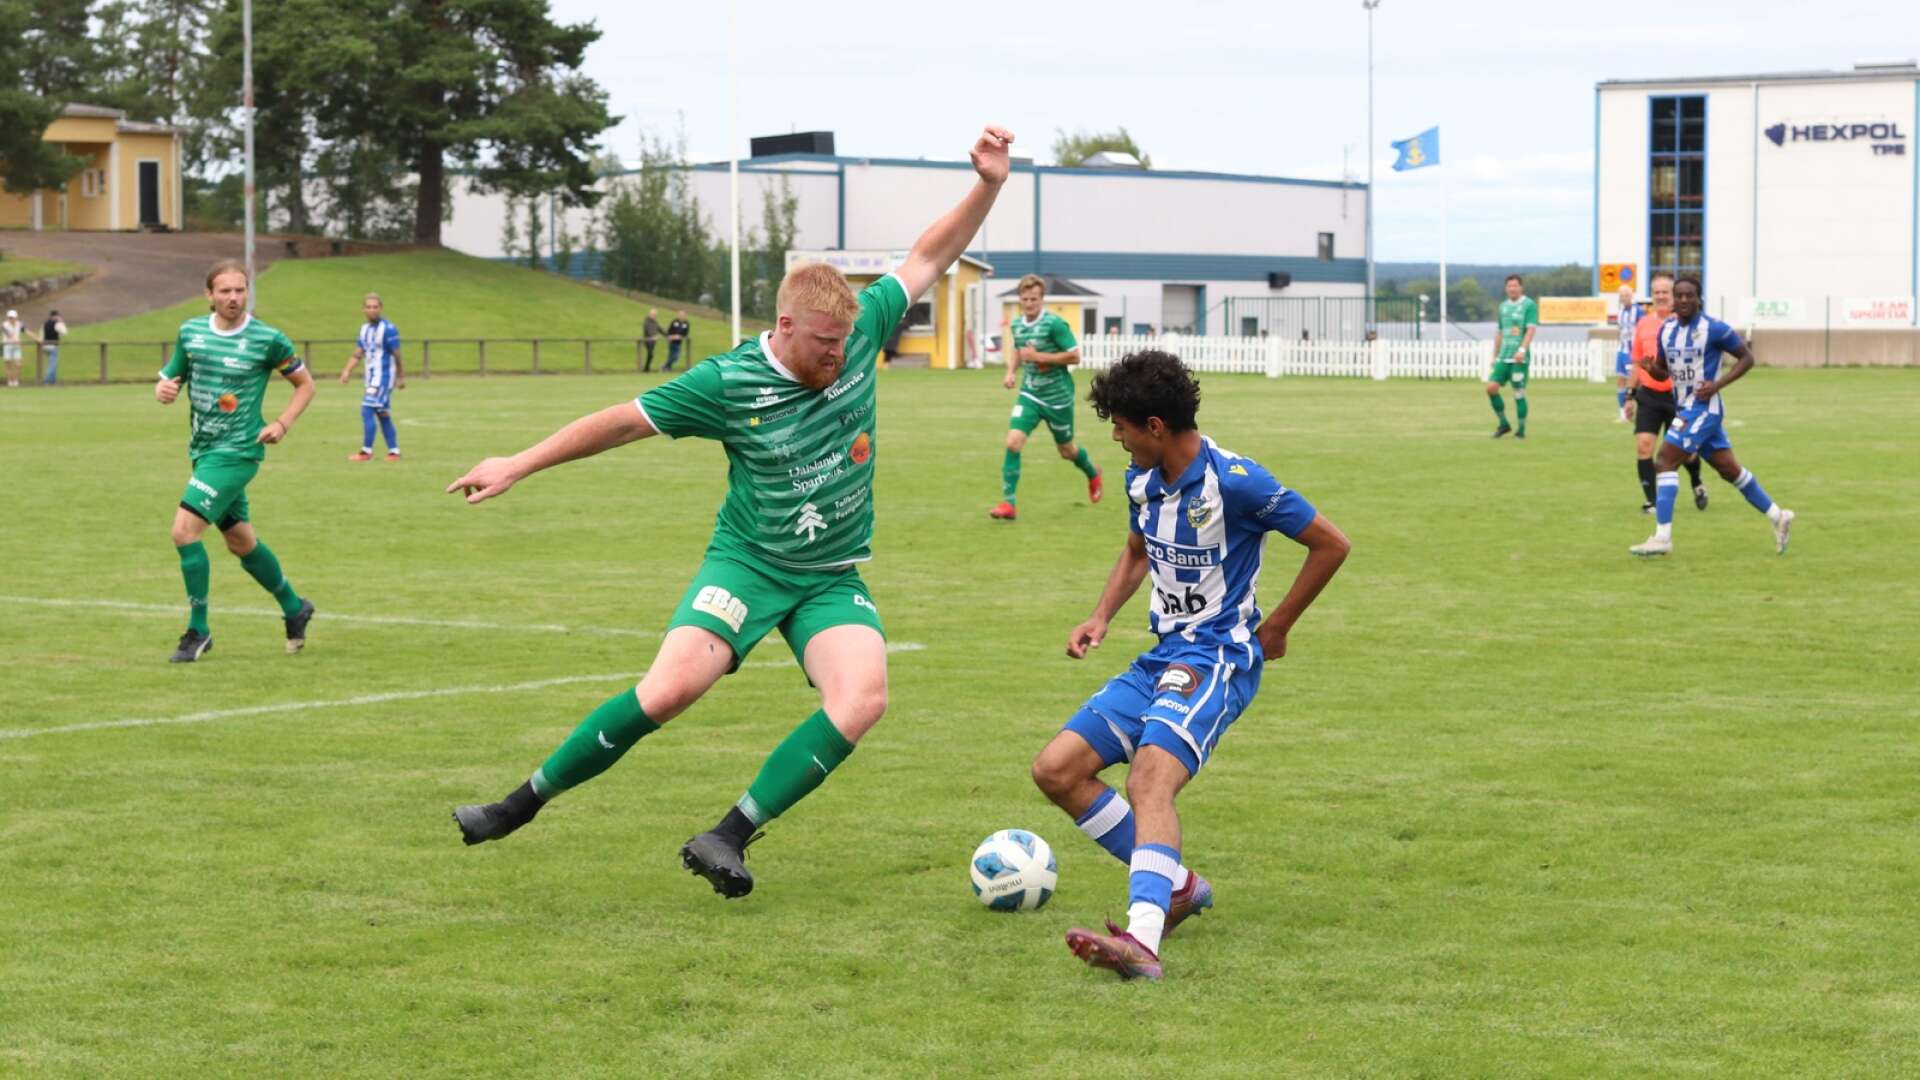 IFK Åmål stod upp bra mot topplaget Högsäters GF, men blev utan poäng.